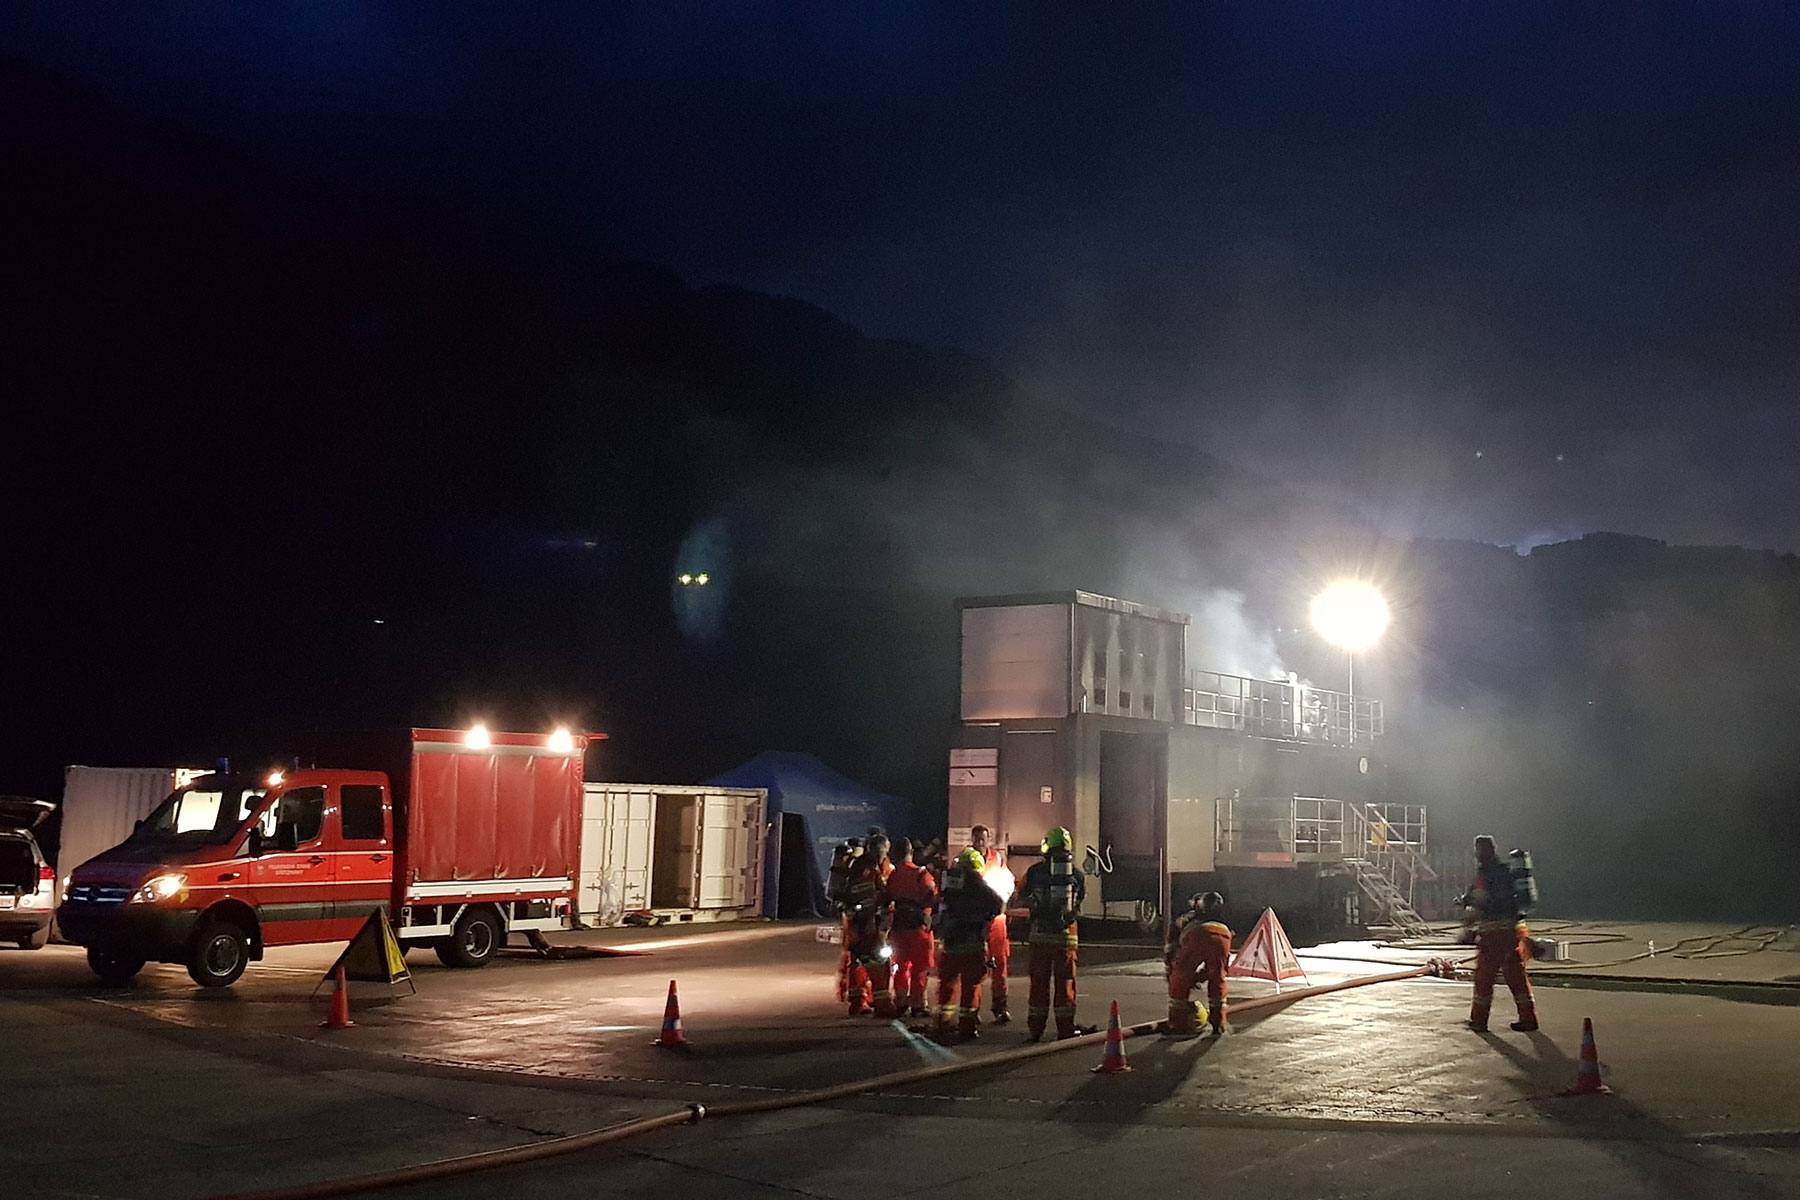 Mitglieder des Atemschutzes Kp 1 trainieren in einer mobilen Brandsimulationsanlage in Alpnach.